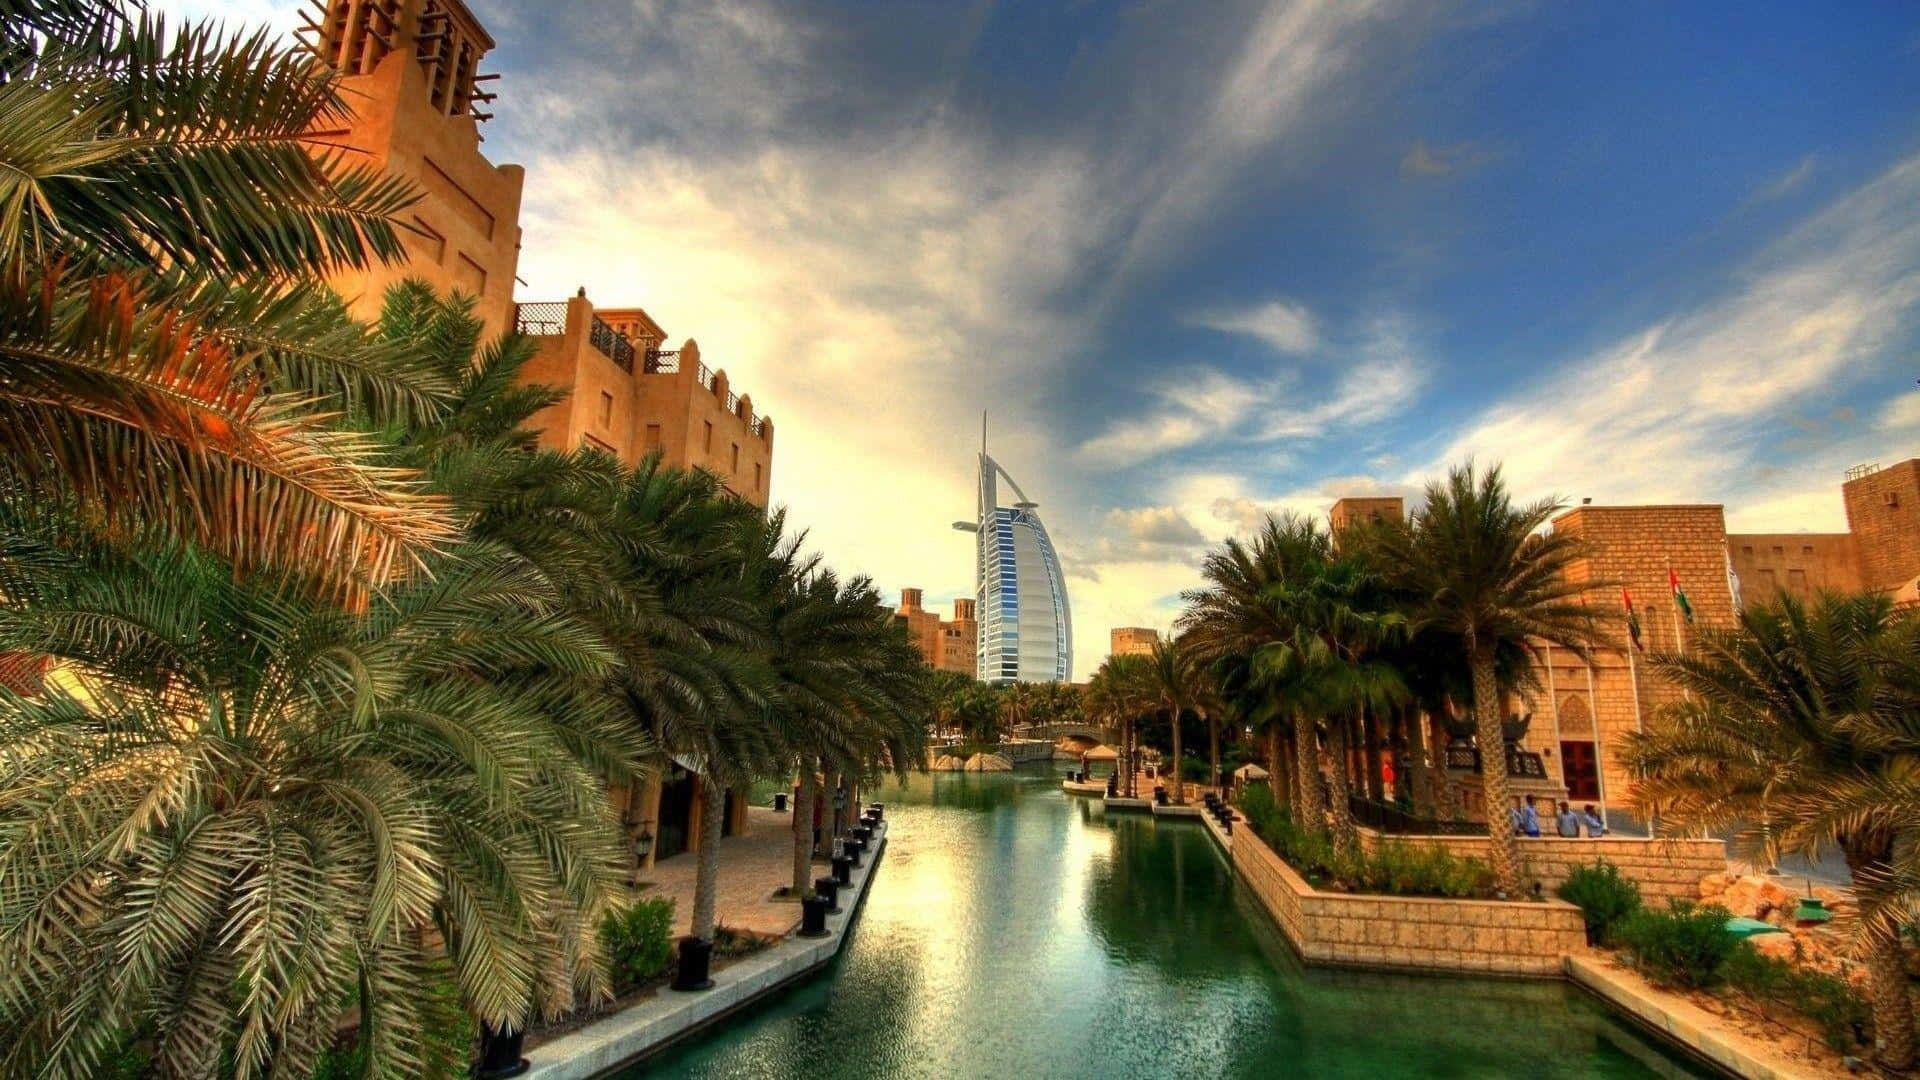 Emiradosárabes Unidos: Uma Paisagem Impressionante.